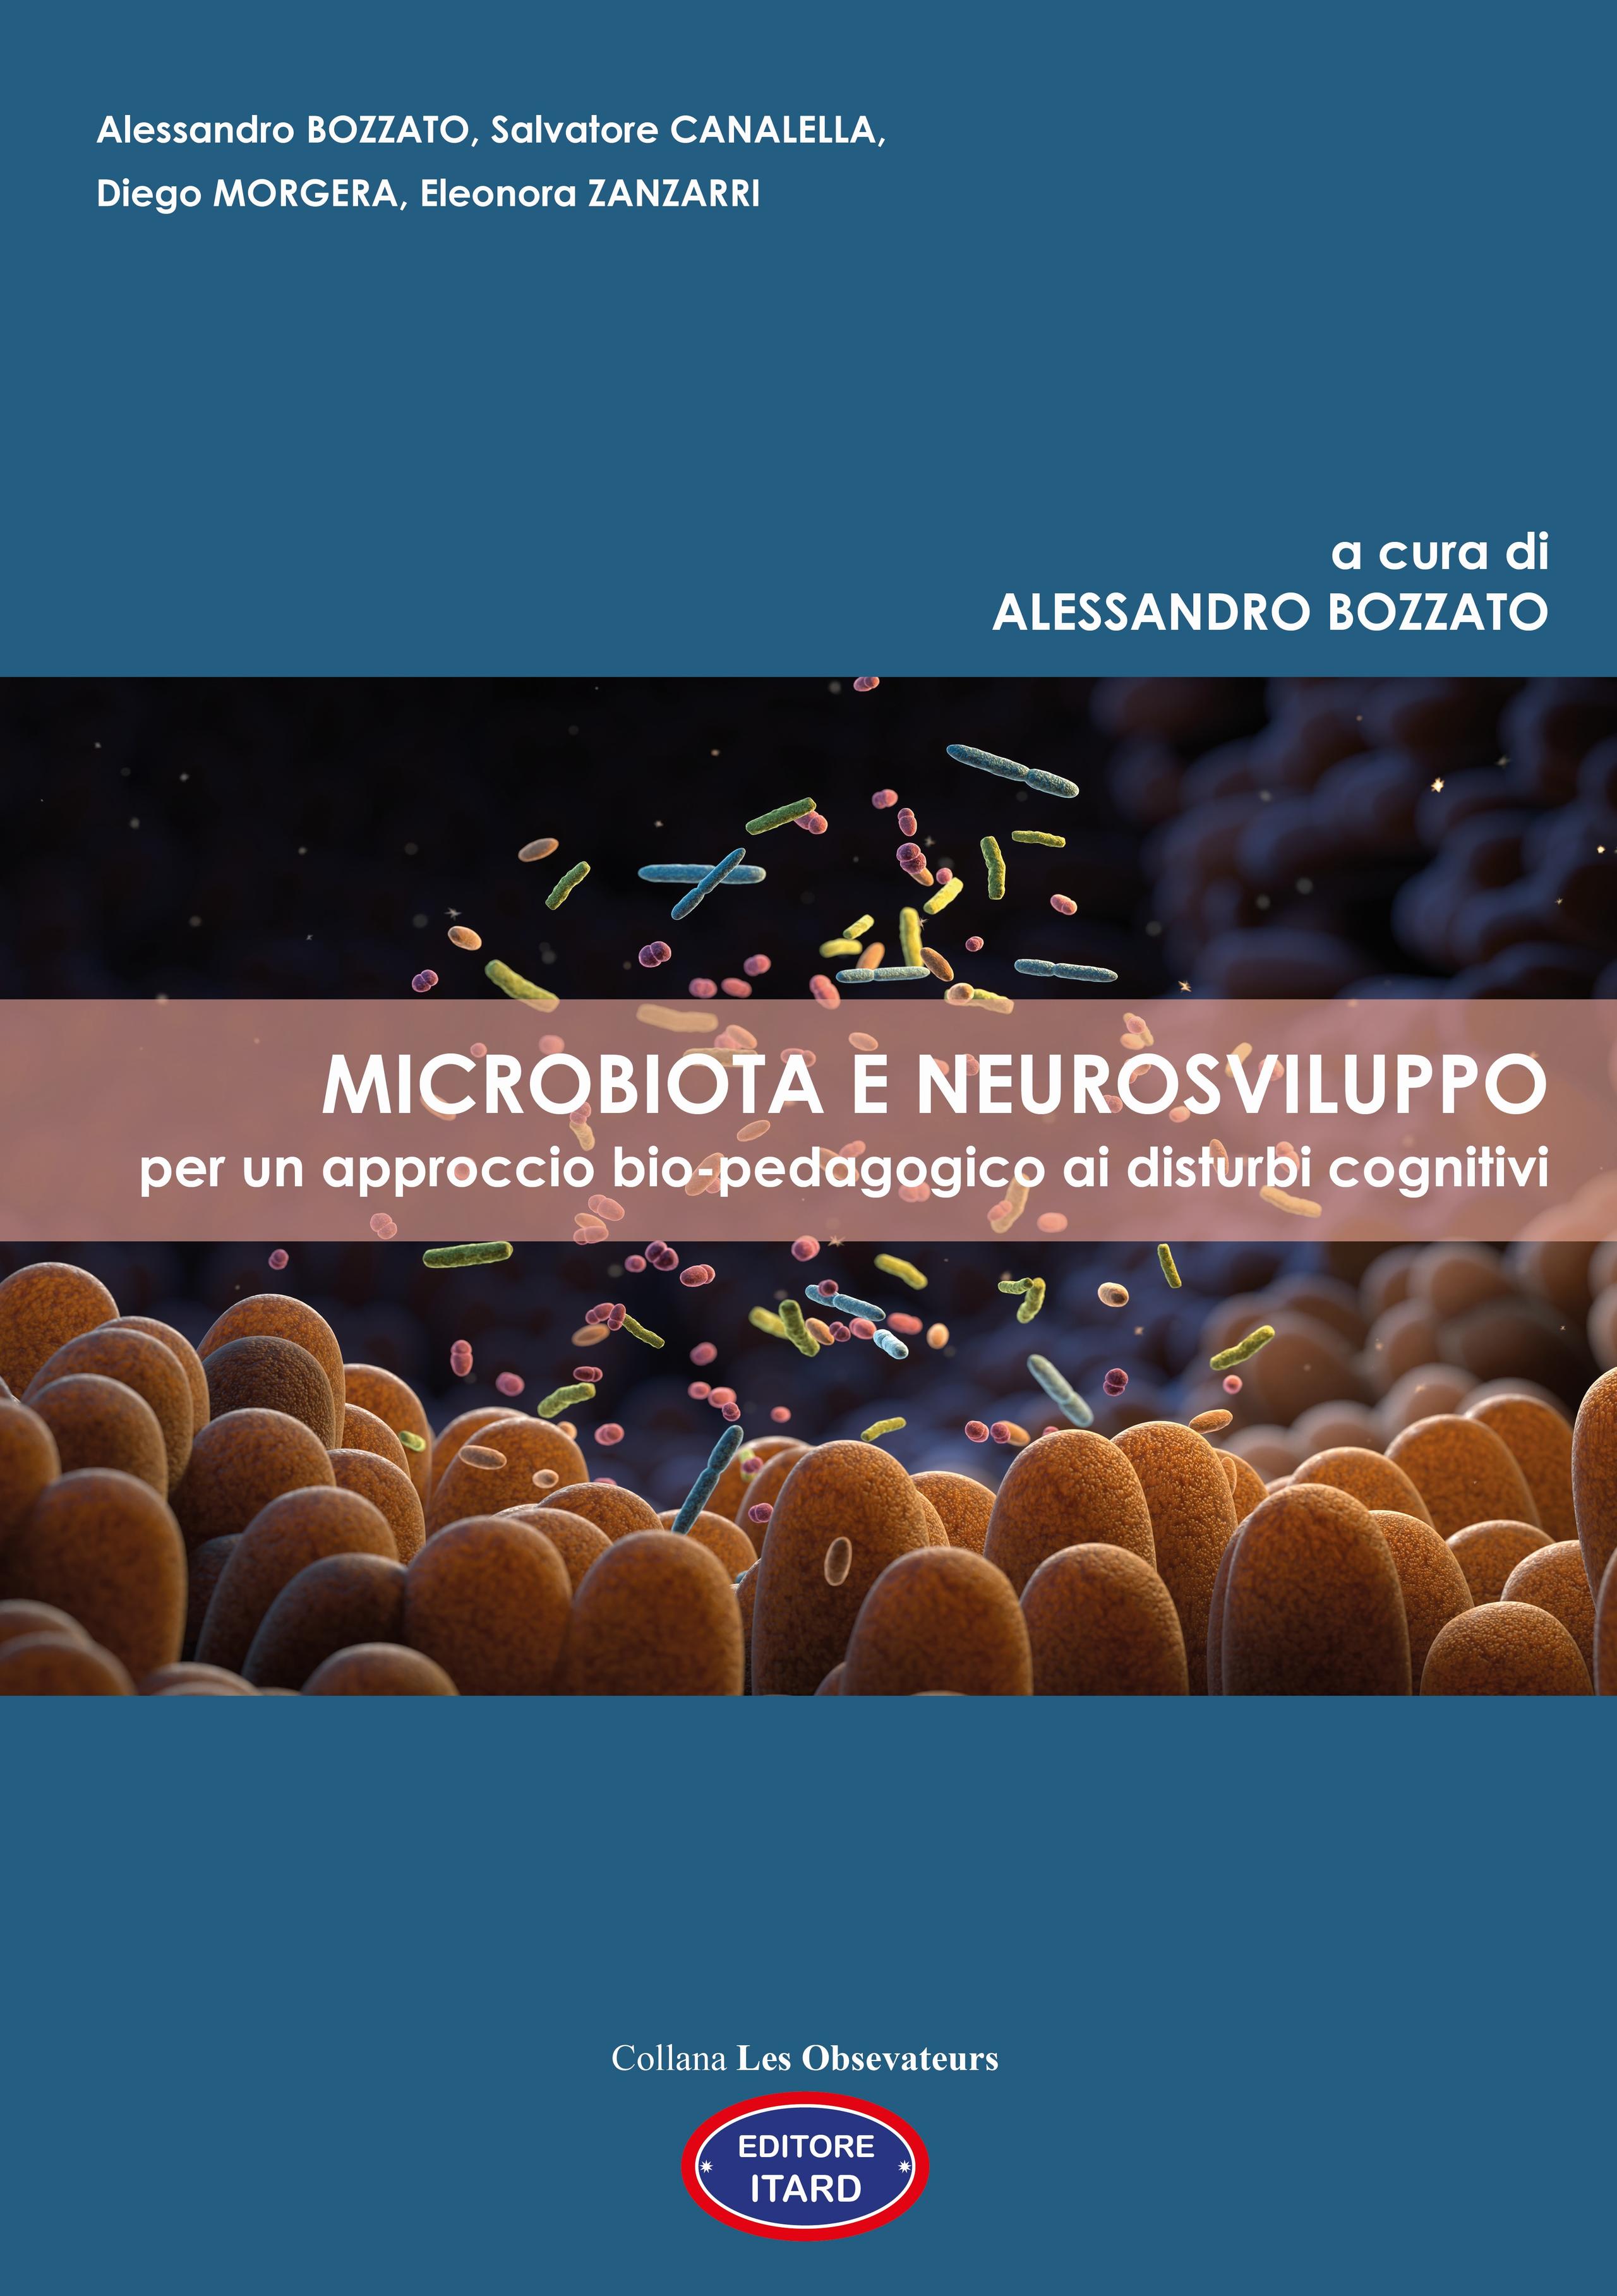 MICROBIOTA E NEUROSVILUPPO per un approccio bio-pedagogico ai disturbi cognitivi